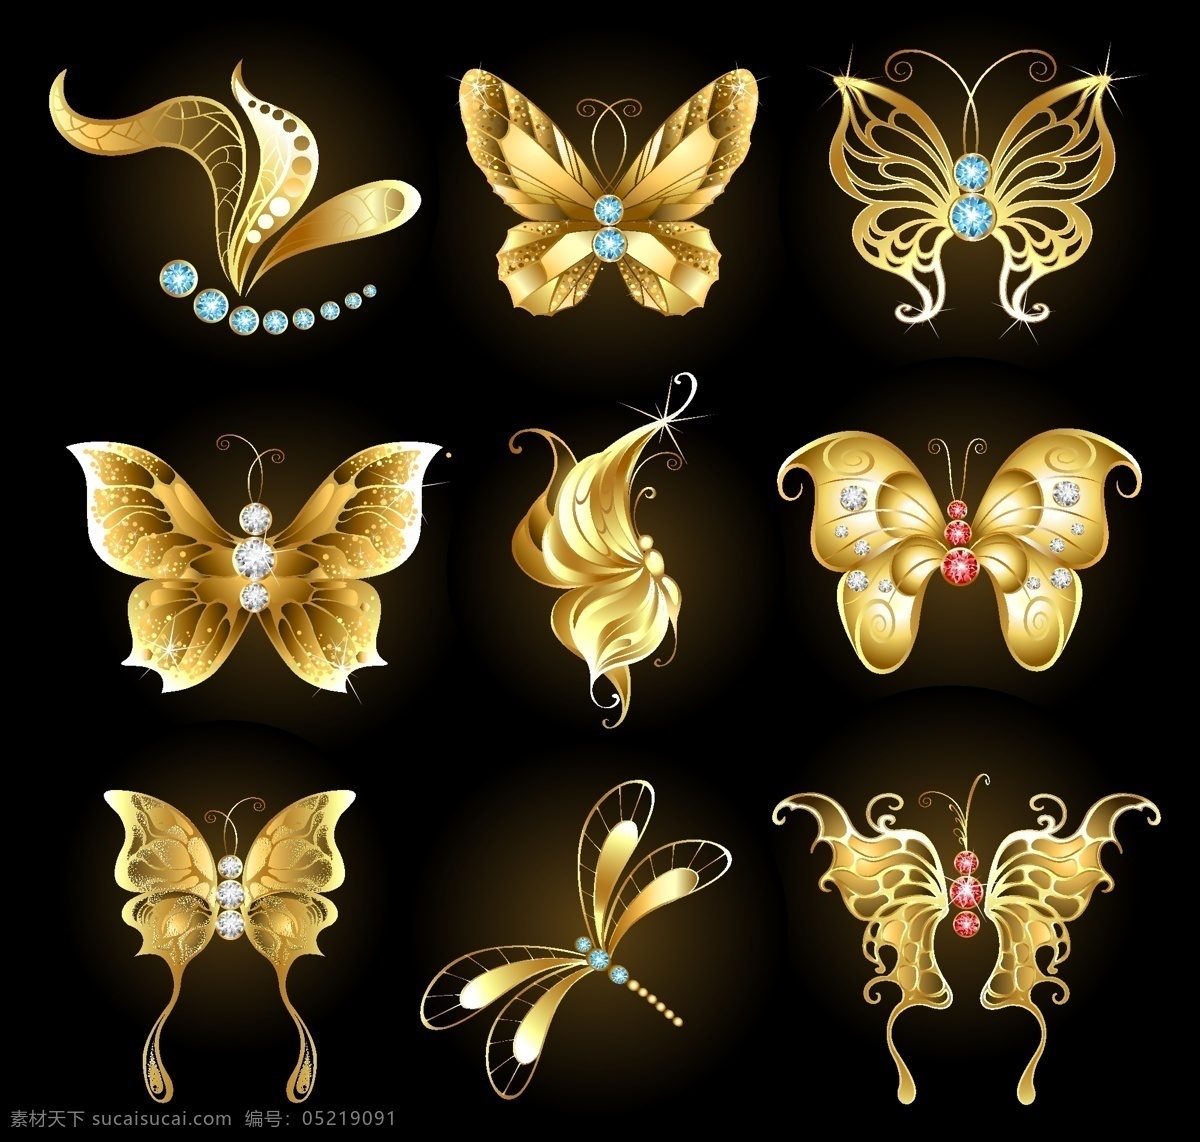 精美金质昆虫 珠宝首饰 金色蝴蝶 钻石 宝石 金色蜻蜓 黄金质感 生物